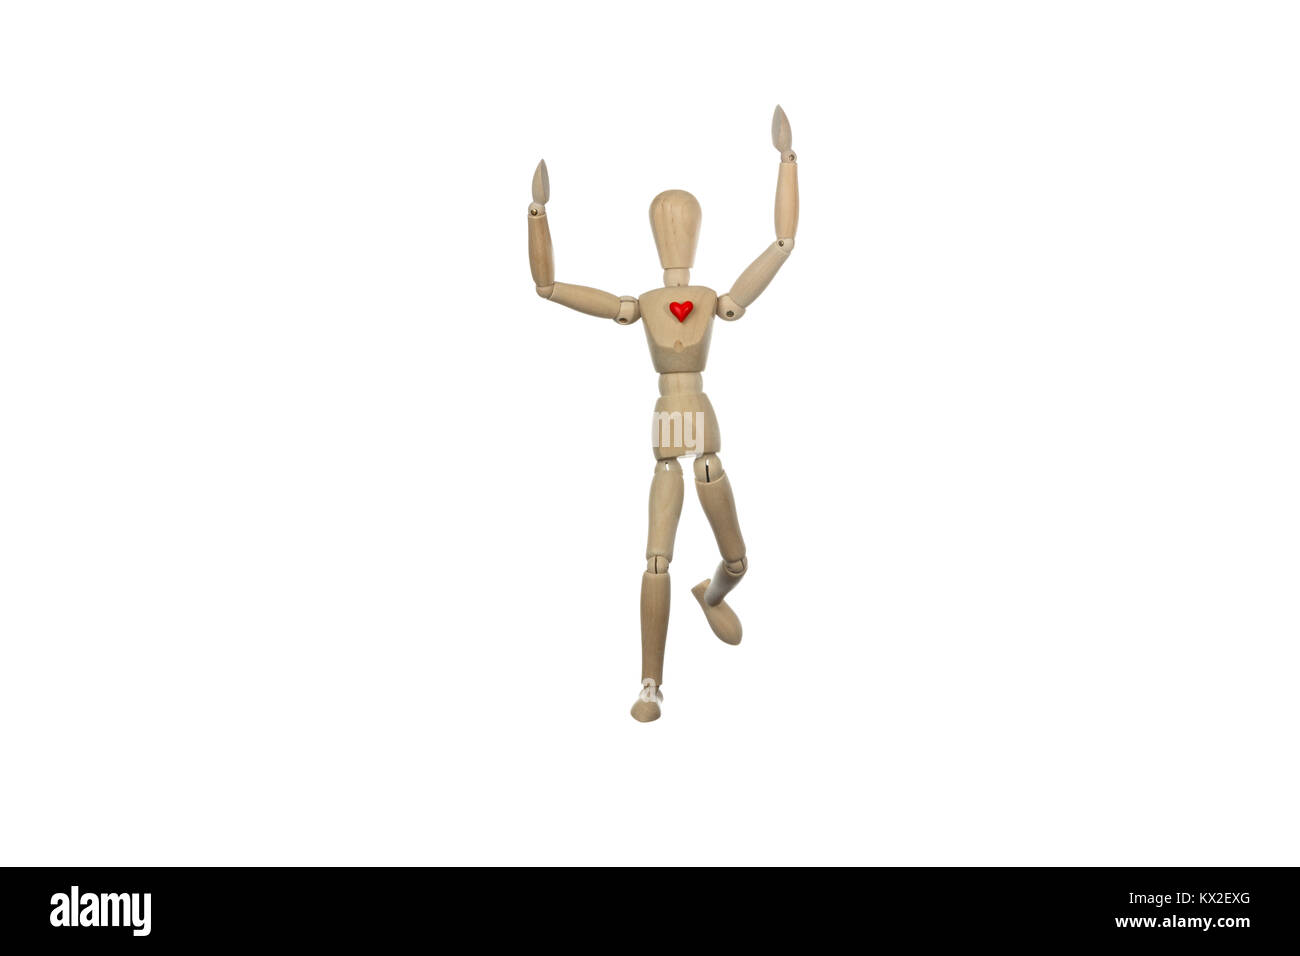 Mannequin en remportant une course avec un cœur rouge, photo conceptuelle sur les saines habitudes de vie pratique d'un sport Banque D'Images